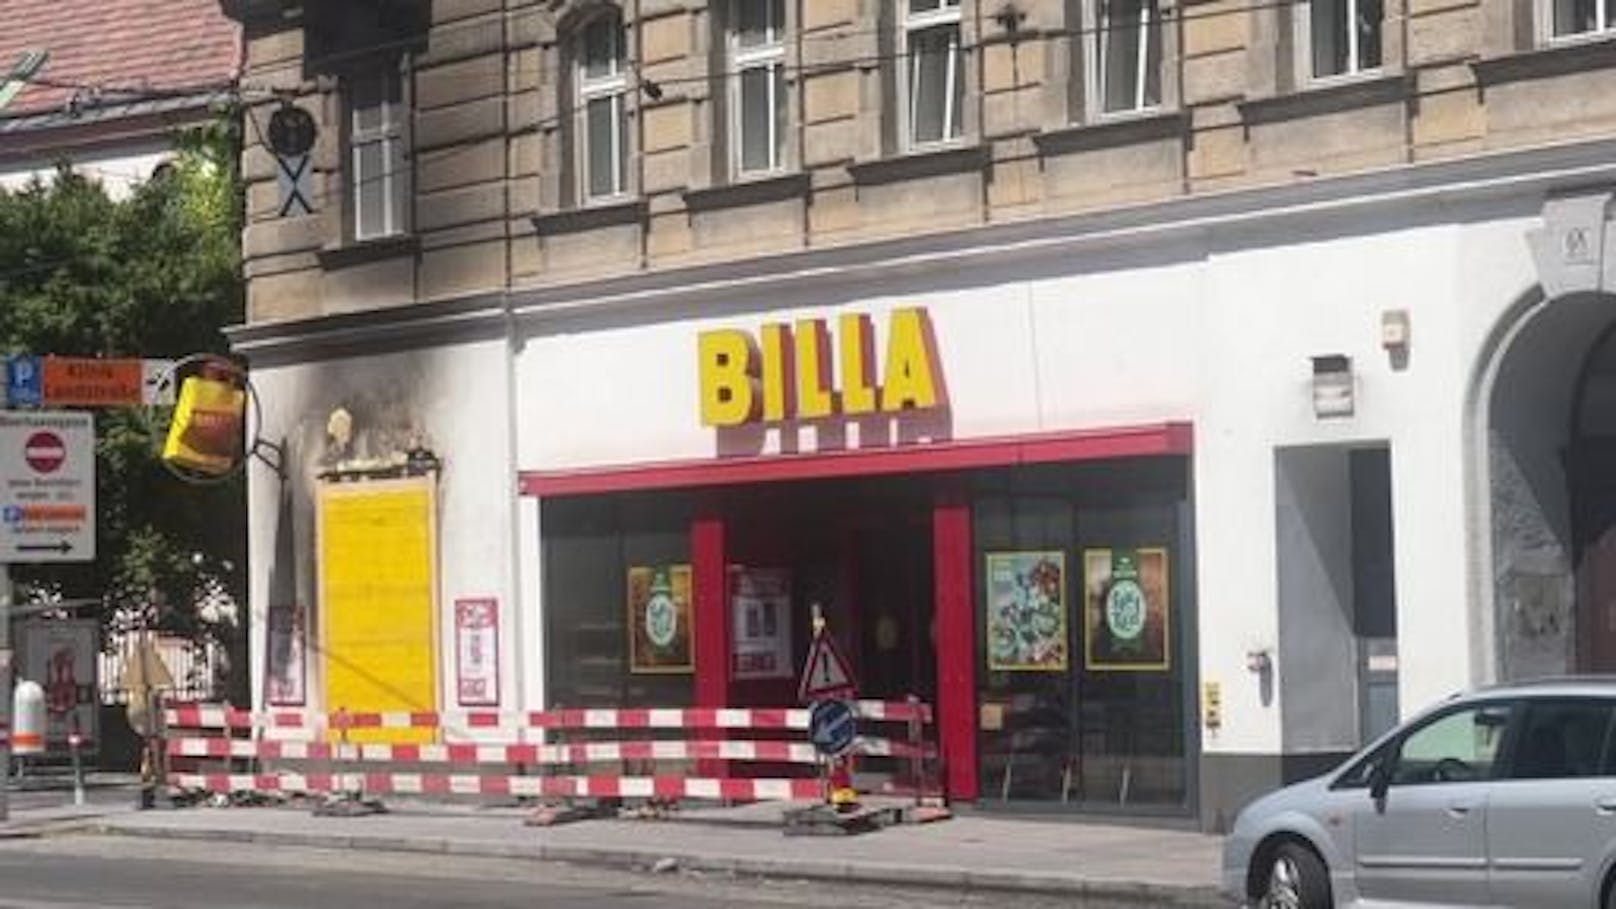 Am frühen Sonntagmorgen brannte die Billa-Filiale in Wien-Landstraße.